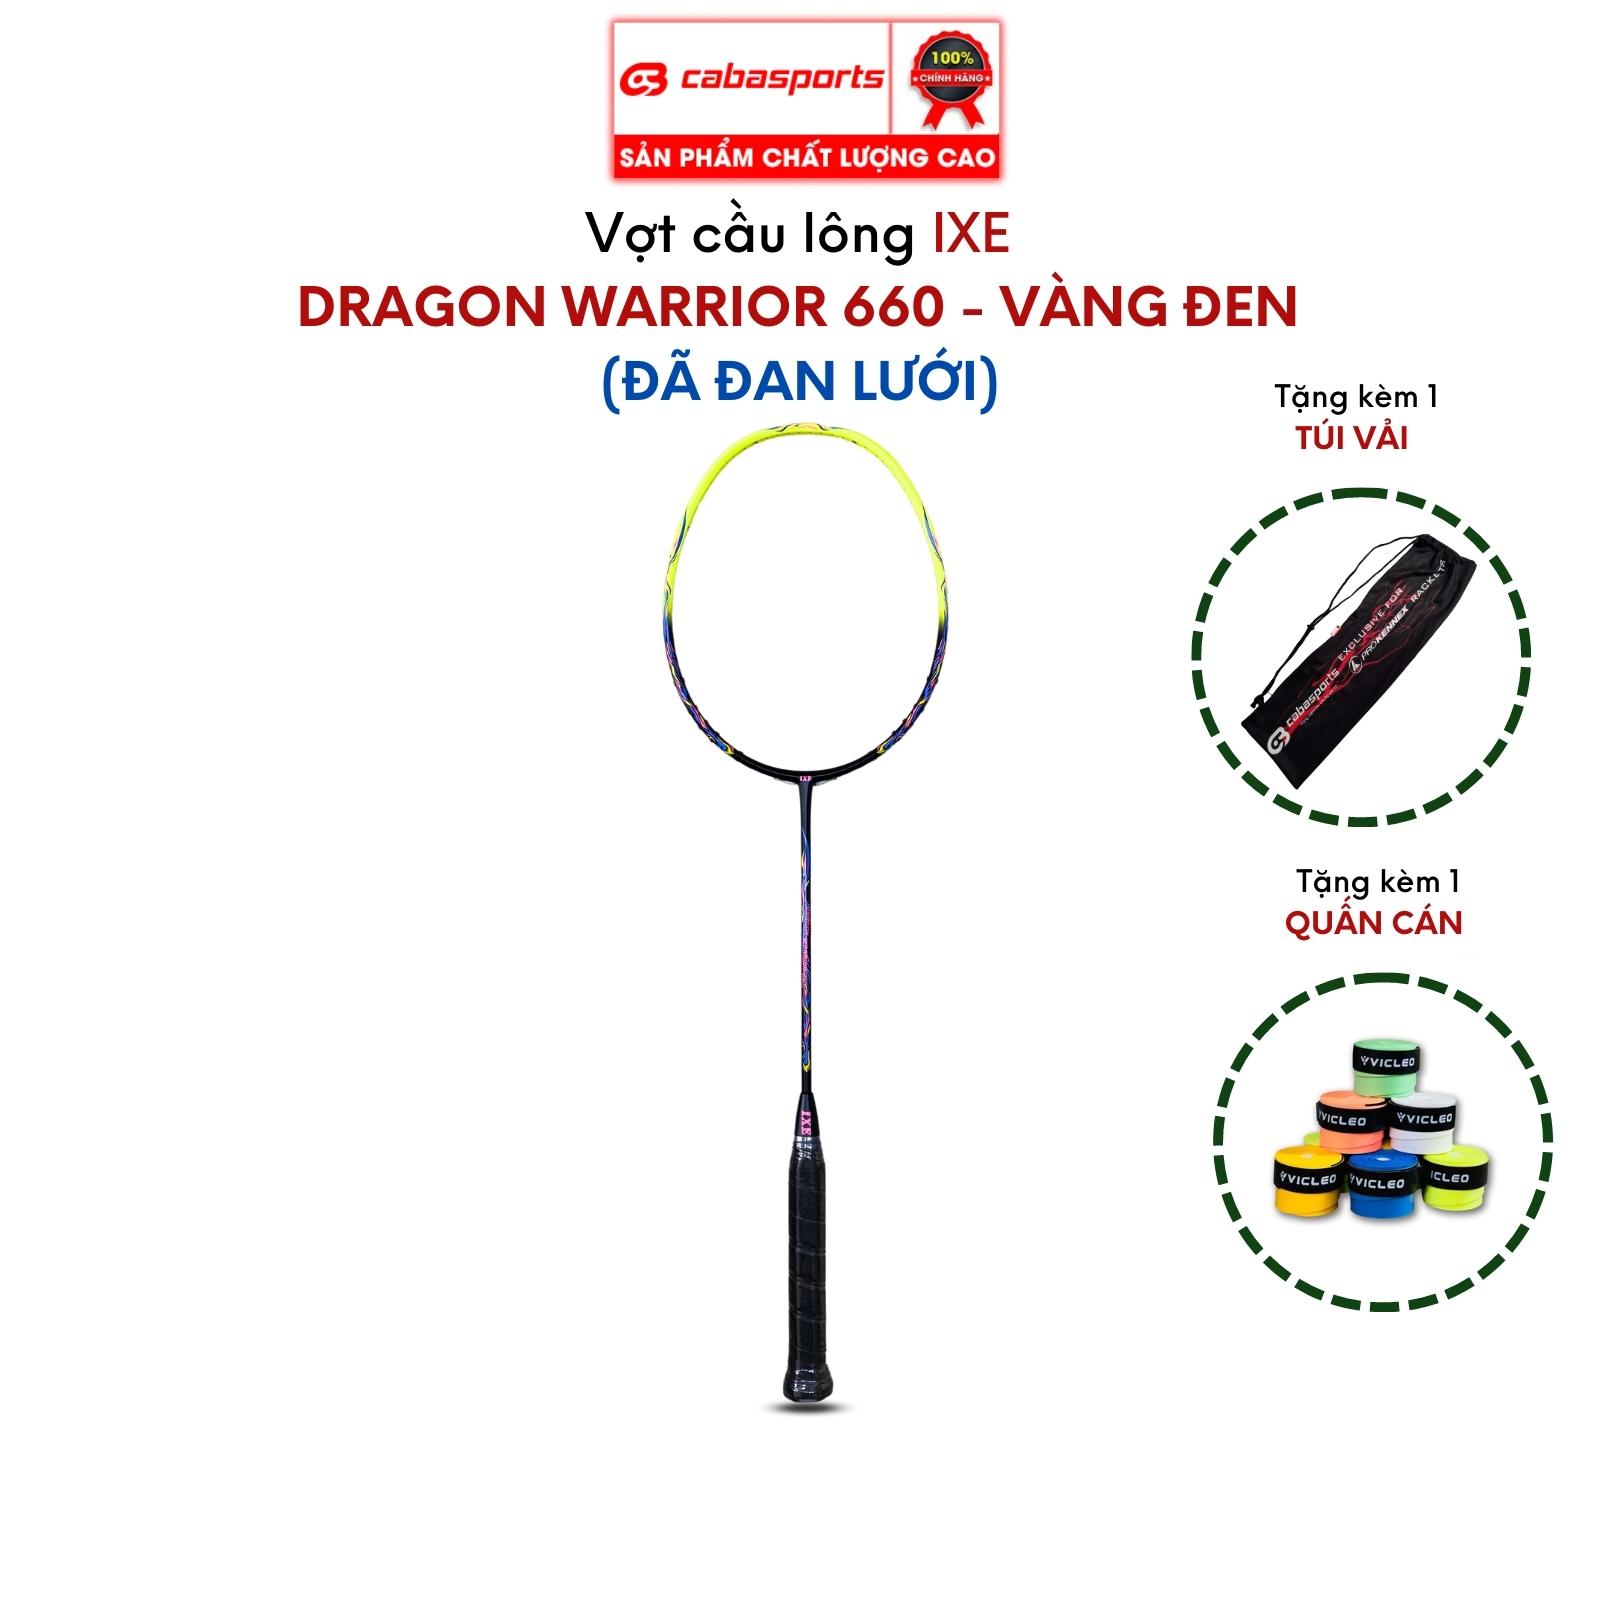 Vợt cầu lông đơn đã đan lưới IXE Dragon Warrior 660 siêu nhẹ giá rẻ, vợt cầu lông carbon chất lượng Bảo hành 3 tháng